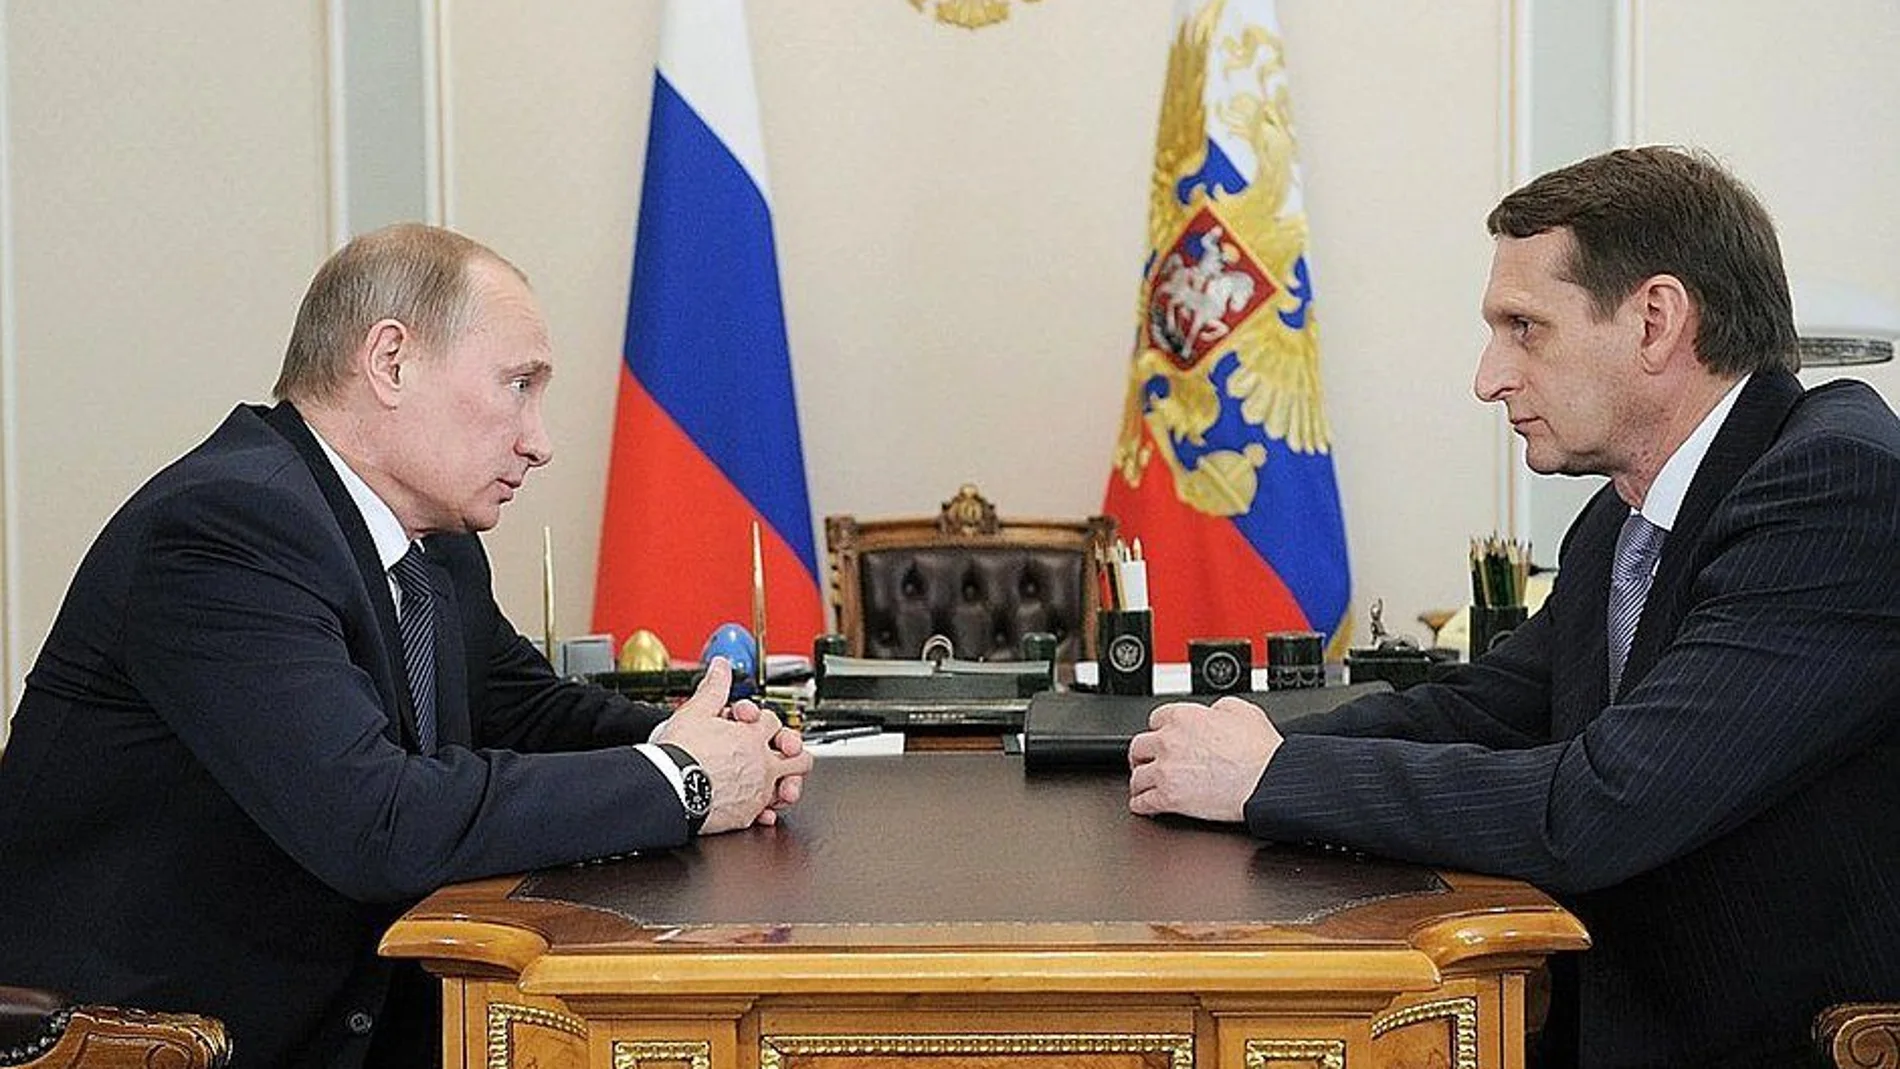 El presidente ruso, Vladimir Putin, y el jefe del Servicio de Inteligencia ruso, Sergei Naryshkin, en una imagen de archivo